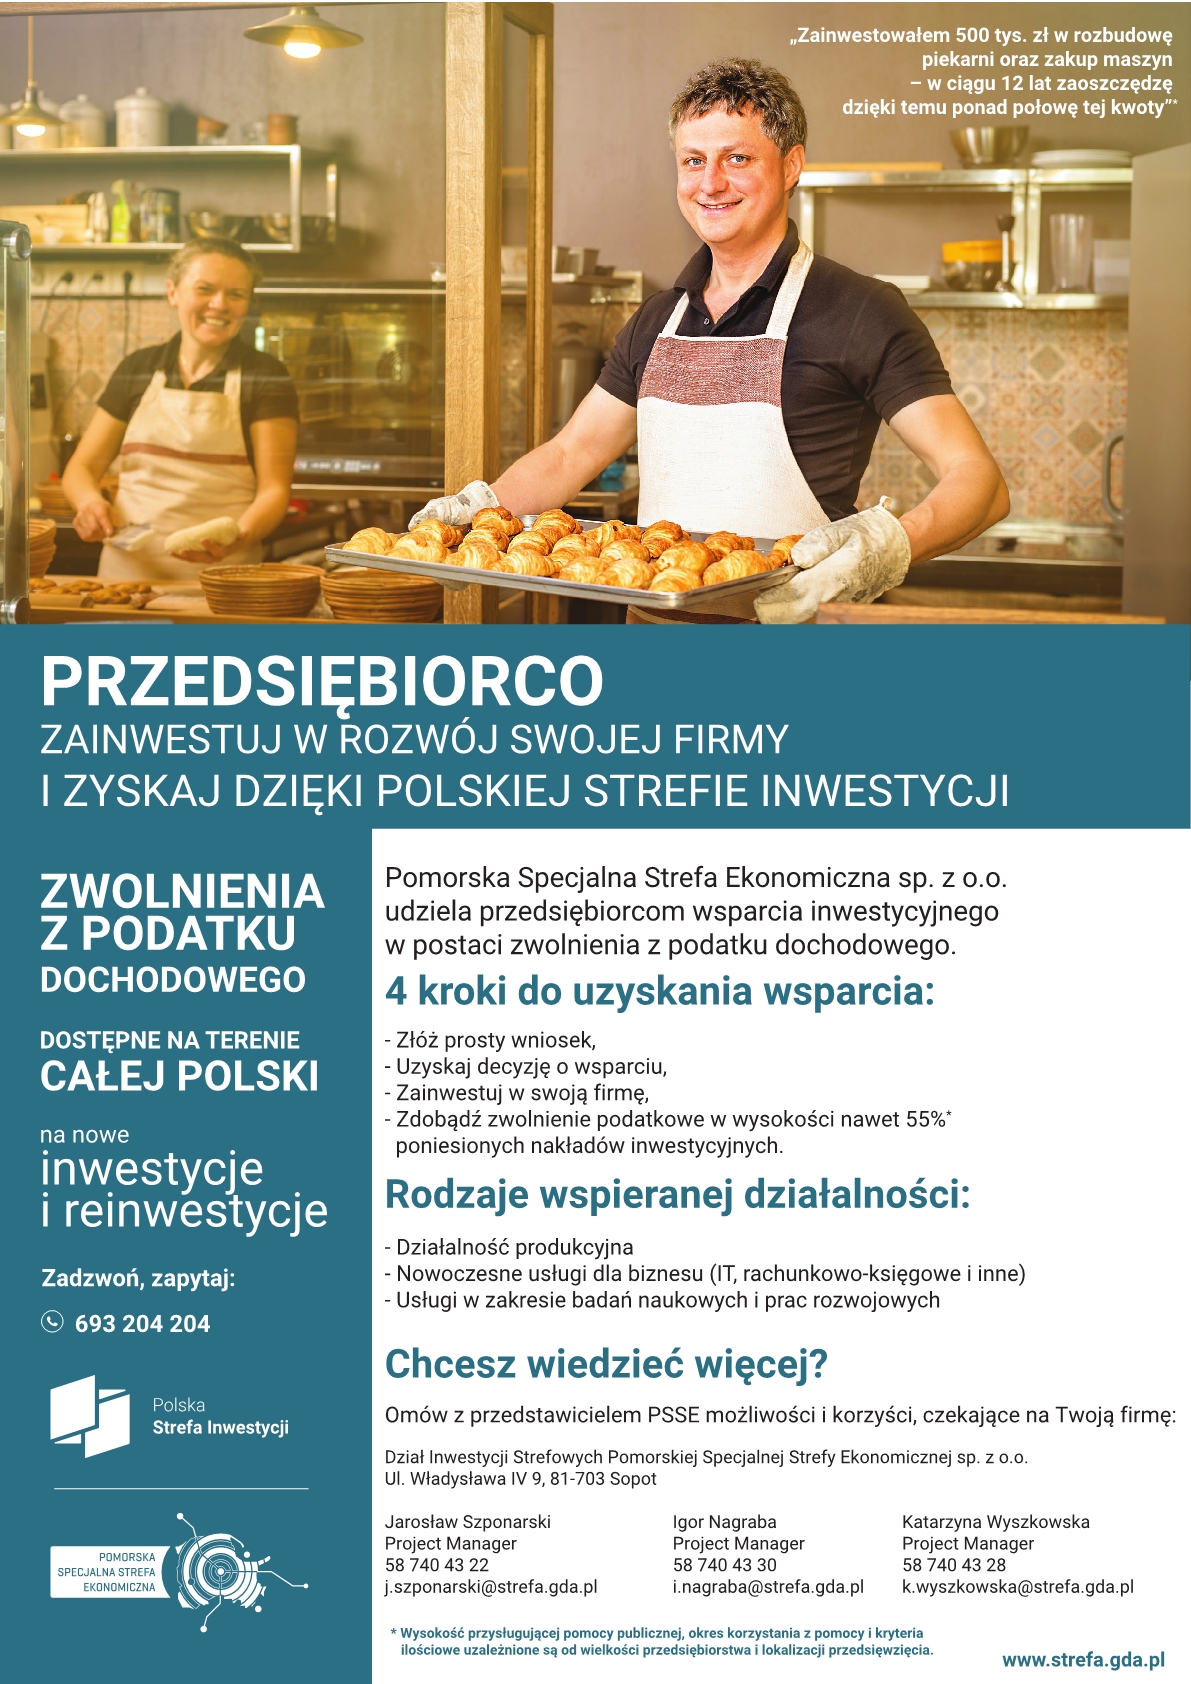 Polska Strefa Inwestycji - informacje dla przedsiębiorców